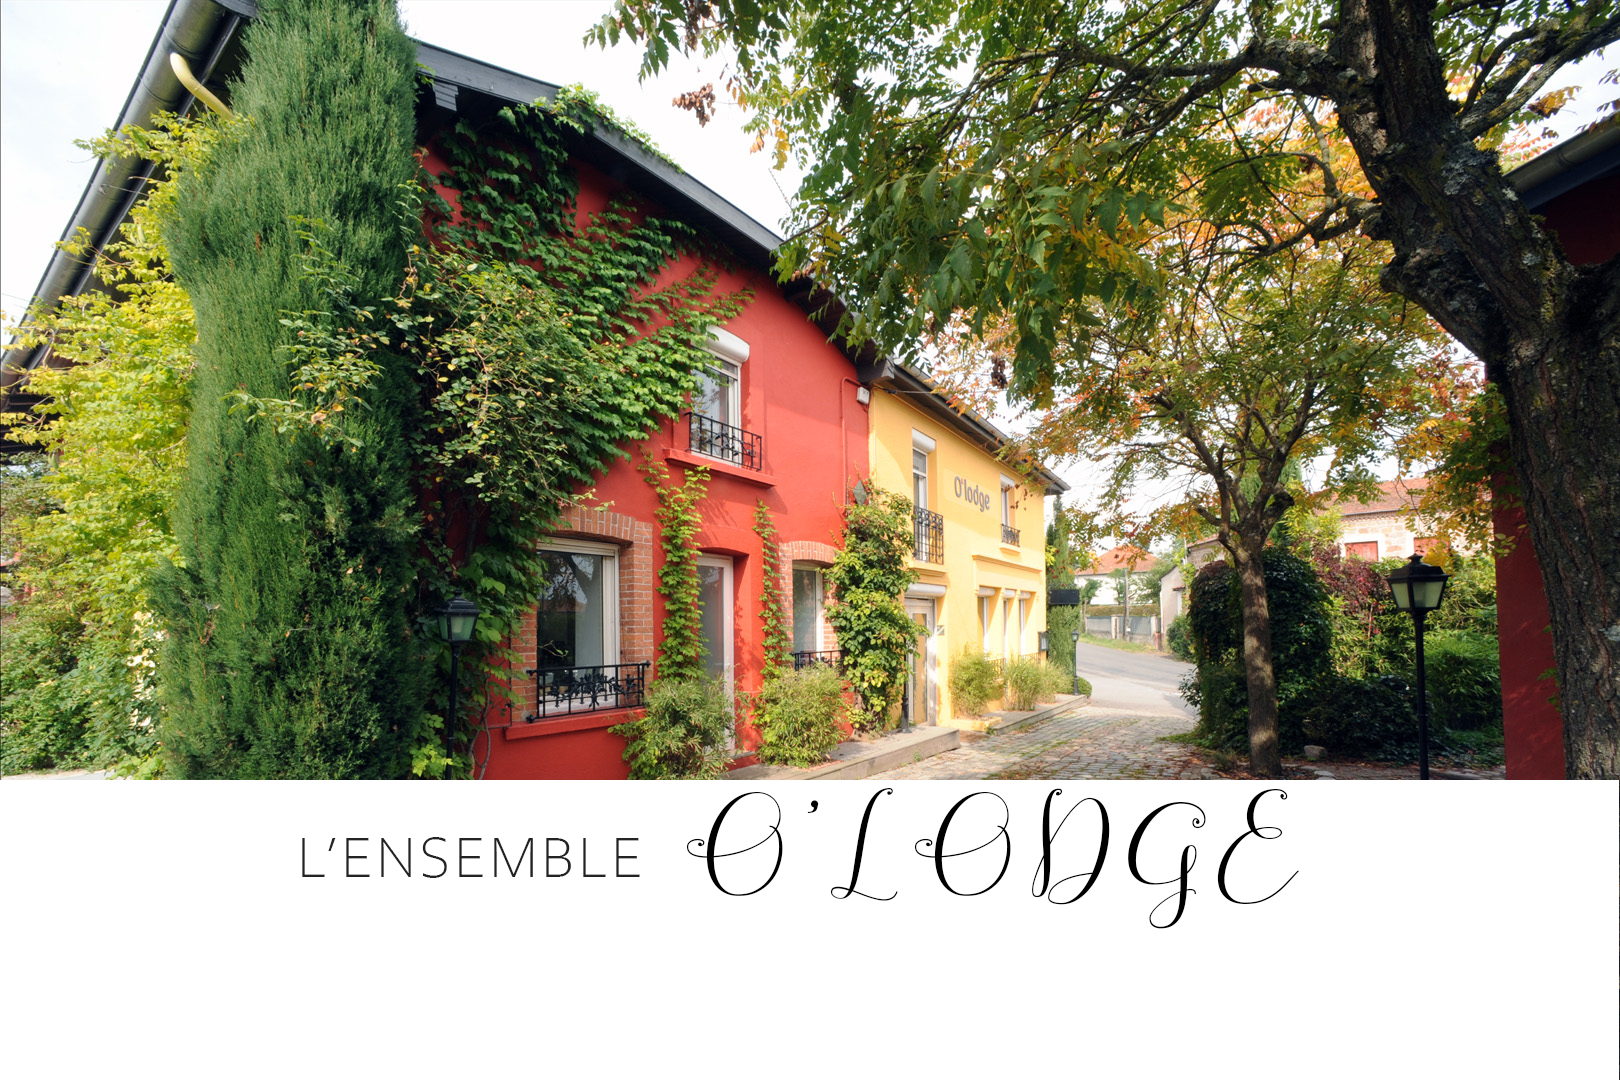 Ensemble O’Lodge